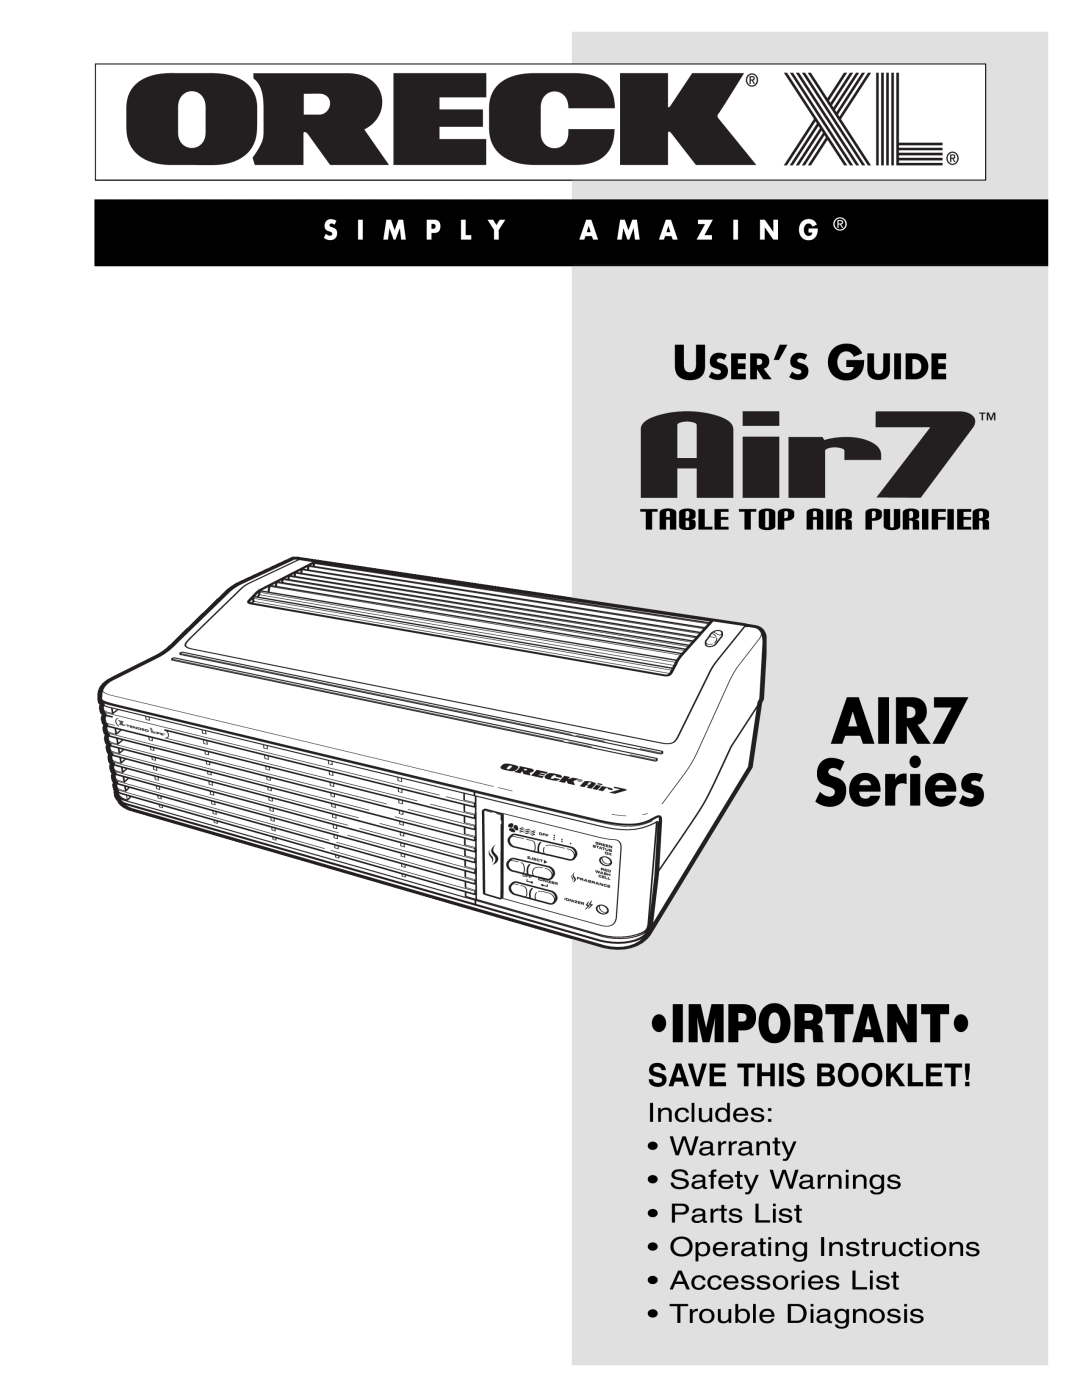 Oreck warranty AIR7 Series, Table Top Air Purifier, User’S Guide, Save This Booklet, S I M P L Y A M A Z I N G 